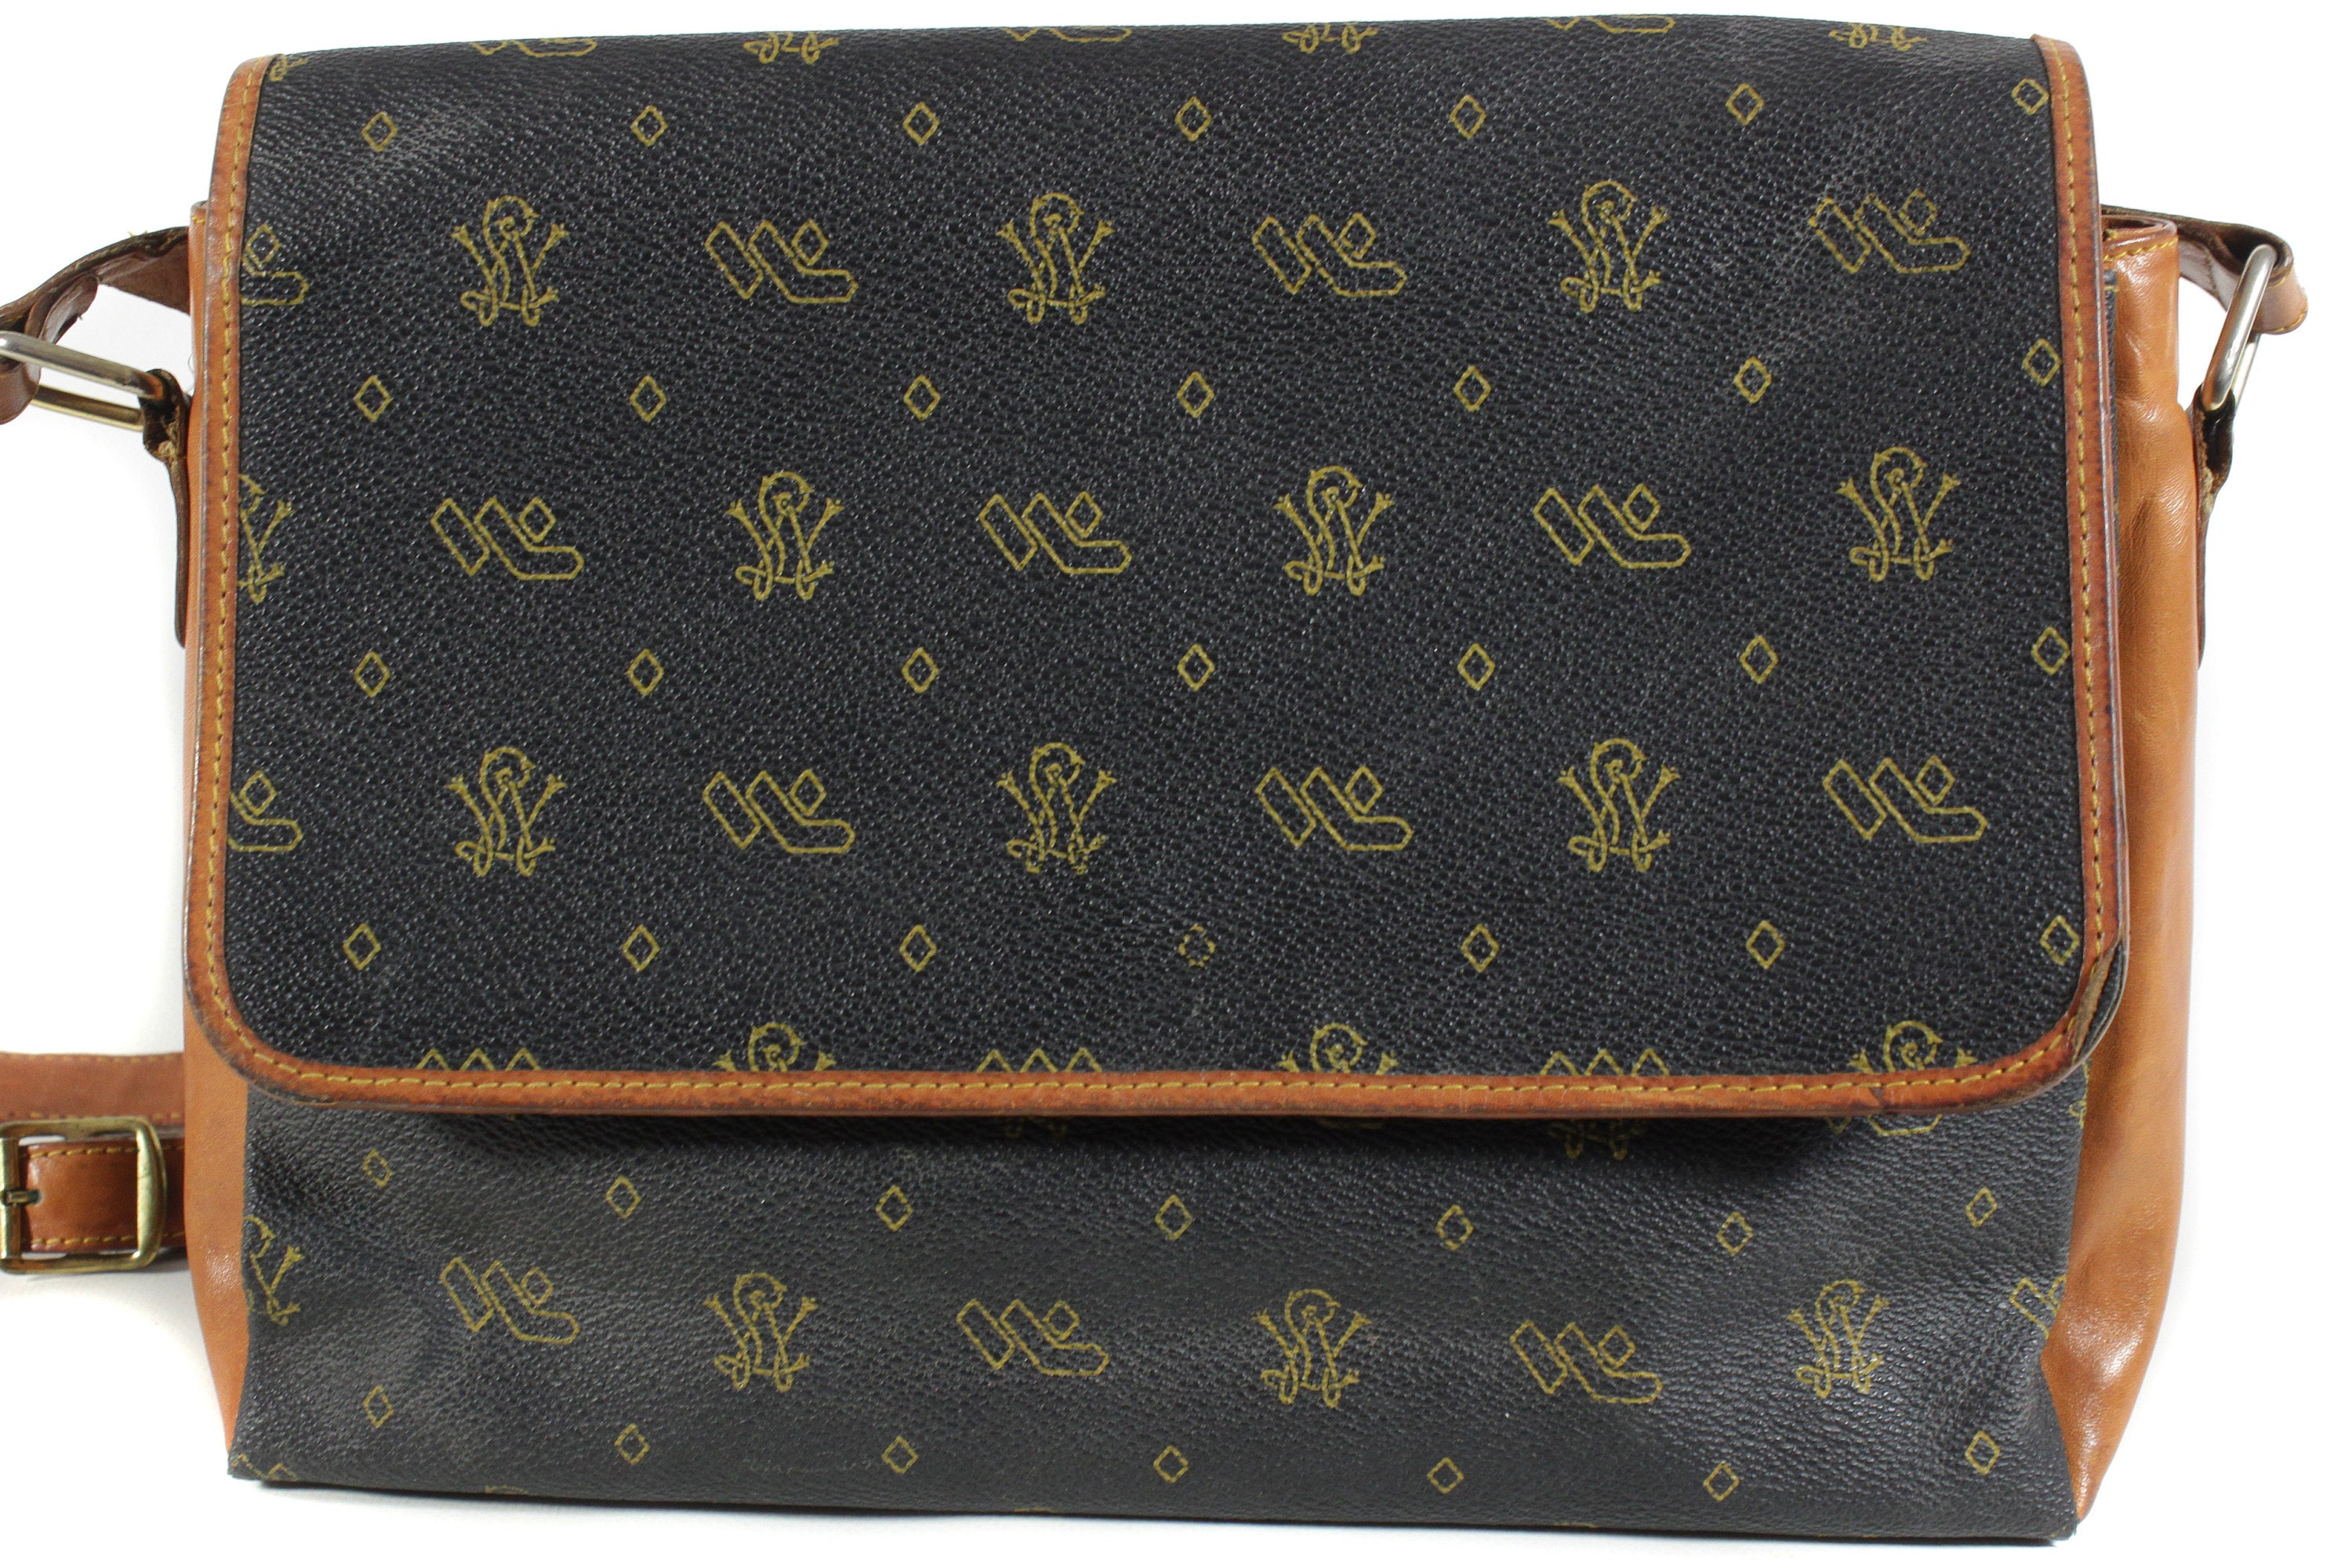 Auth & Vtg Louis Vuitton Speedy 30 Hand Bag Monogram BN 1980s